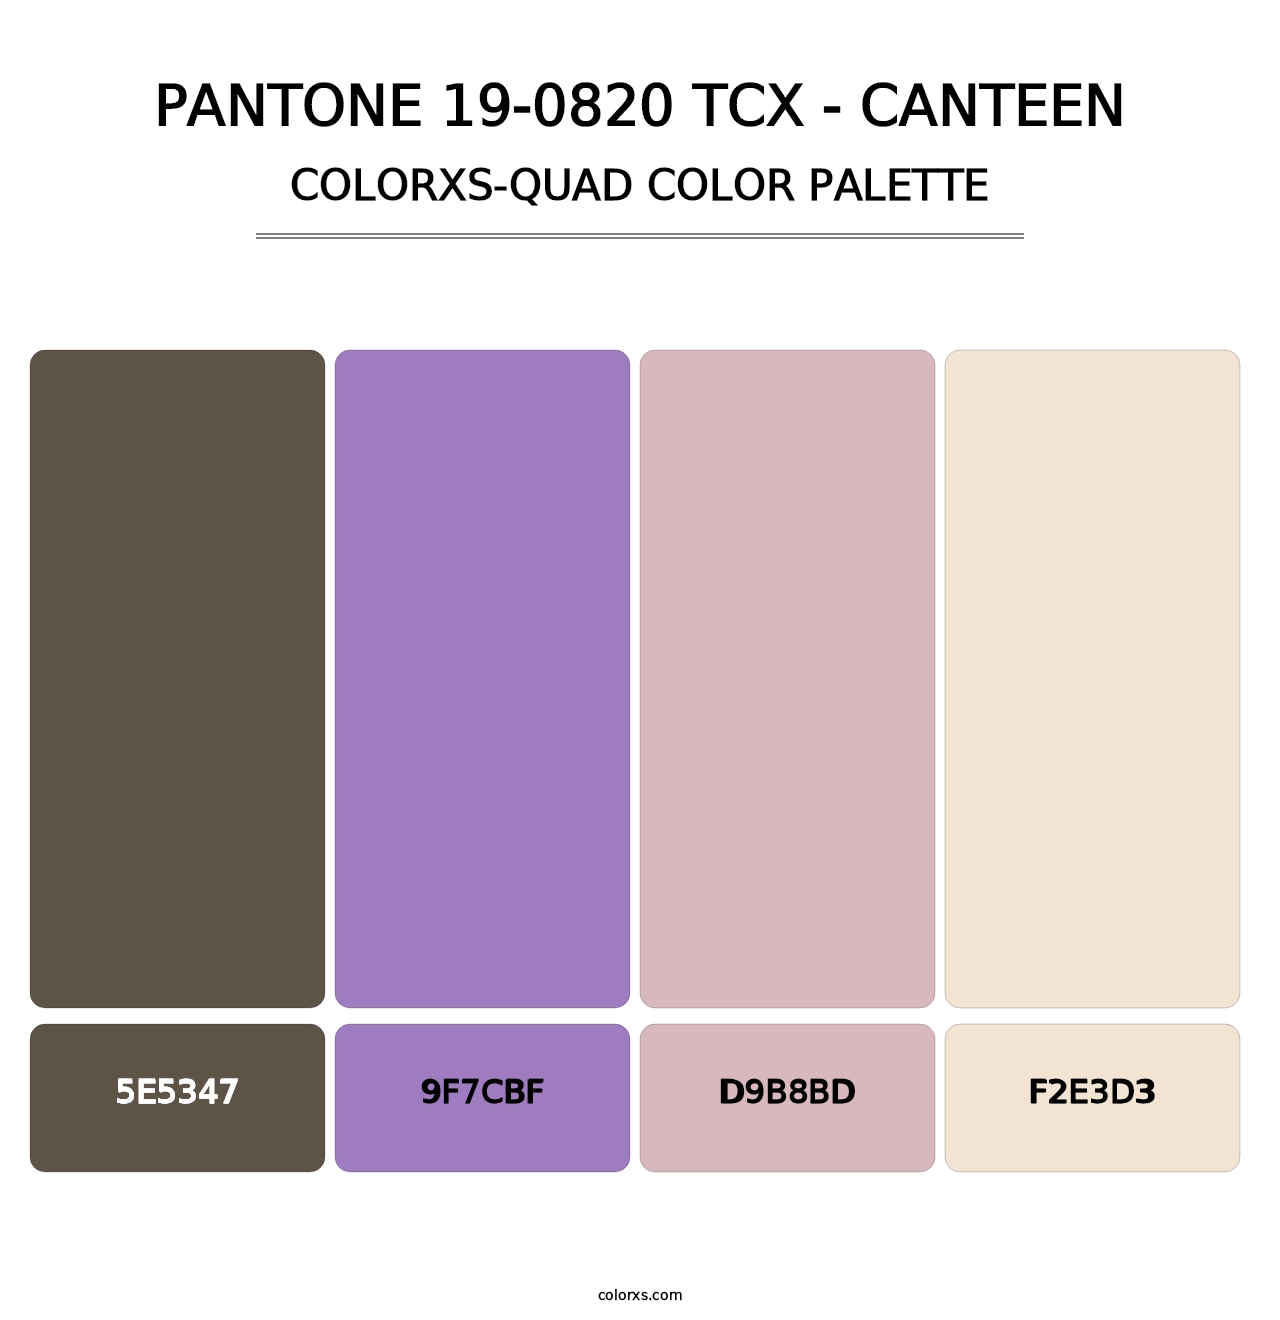 PANTONE 19-0820 TCX - Canteen - Colorxs Quad Palette